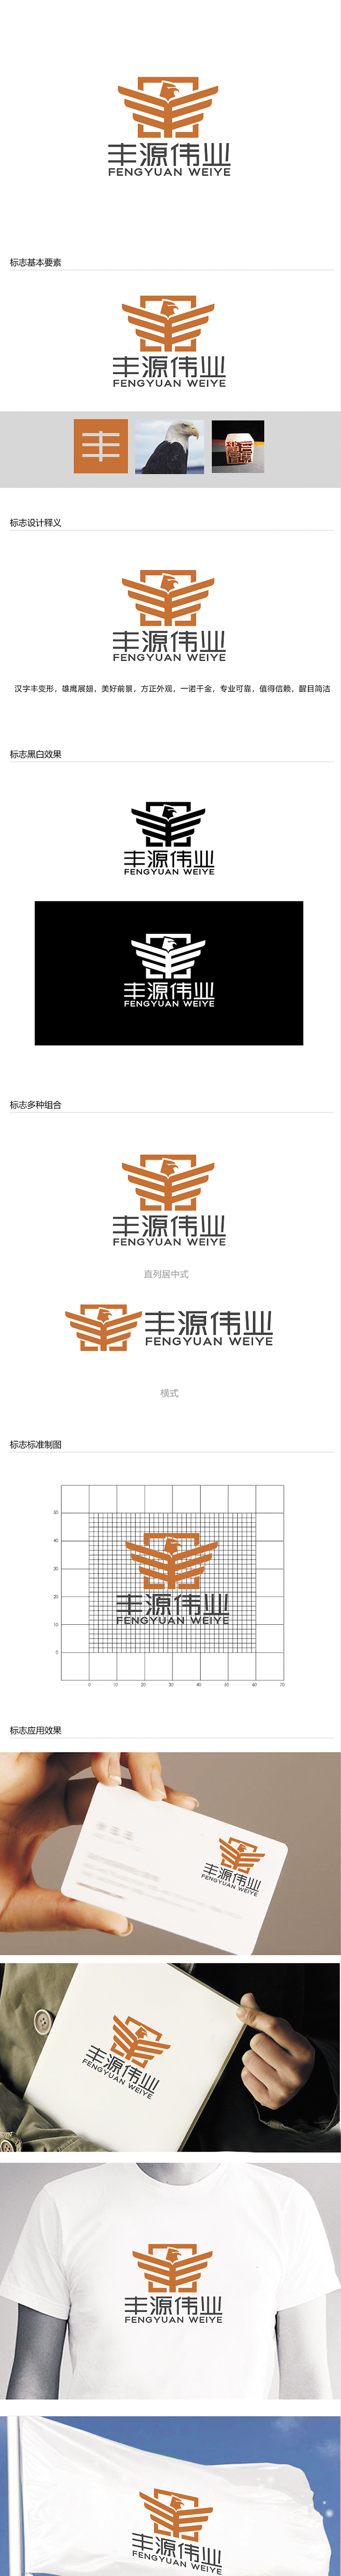 赵鹏的北京丰源伟业建筑装饰工程有限公司logo设计